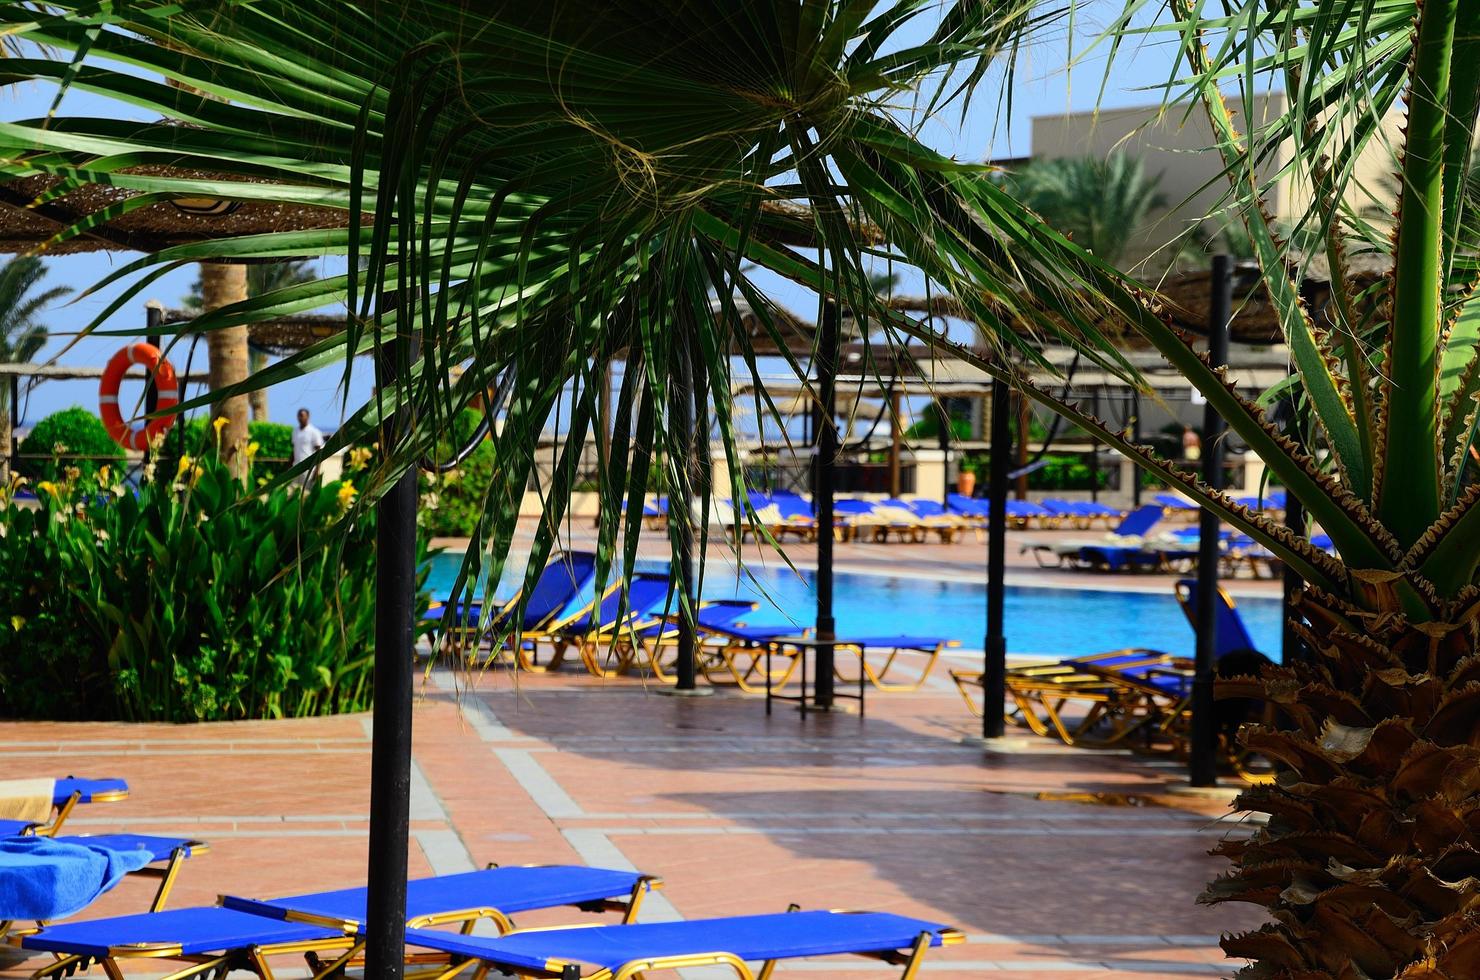 palmiers au bord de la piscine en vacances photo